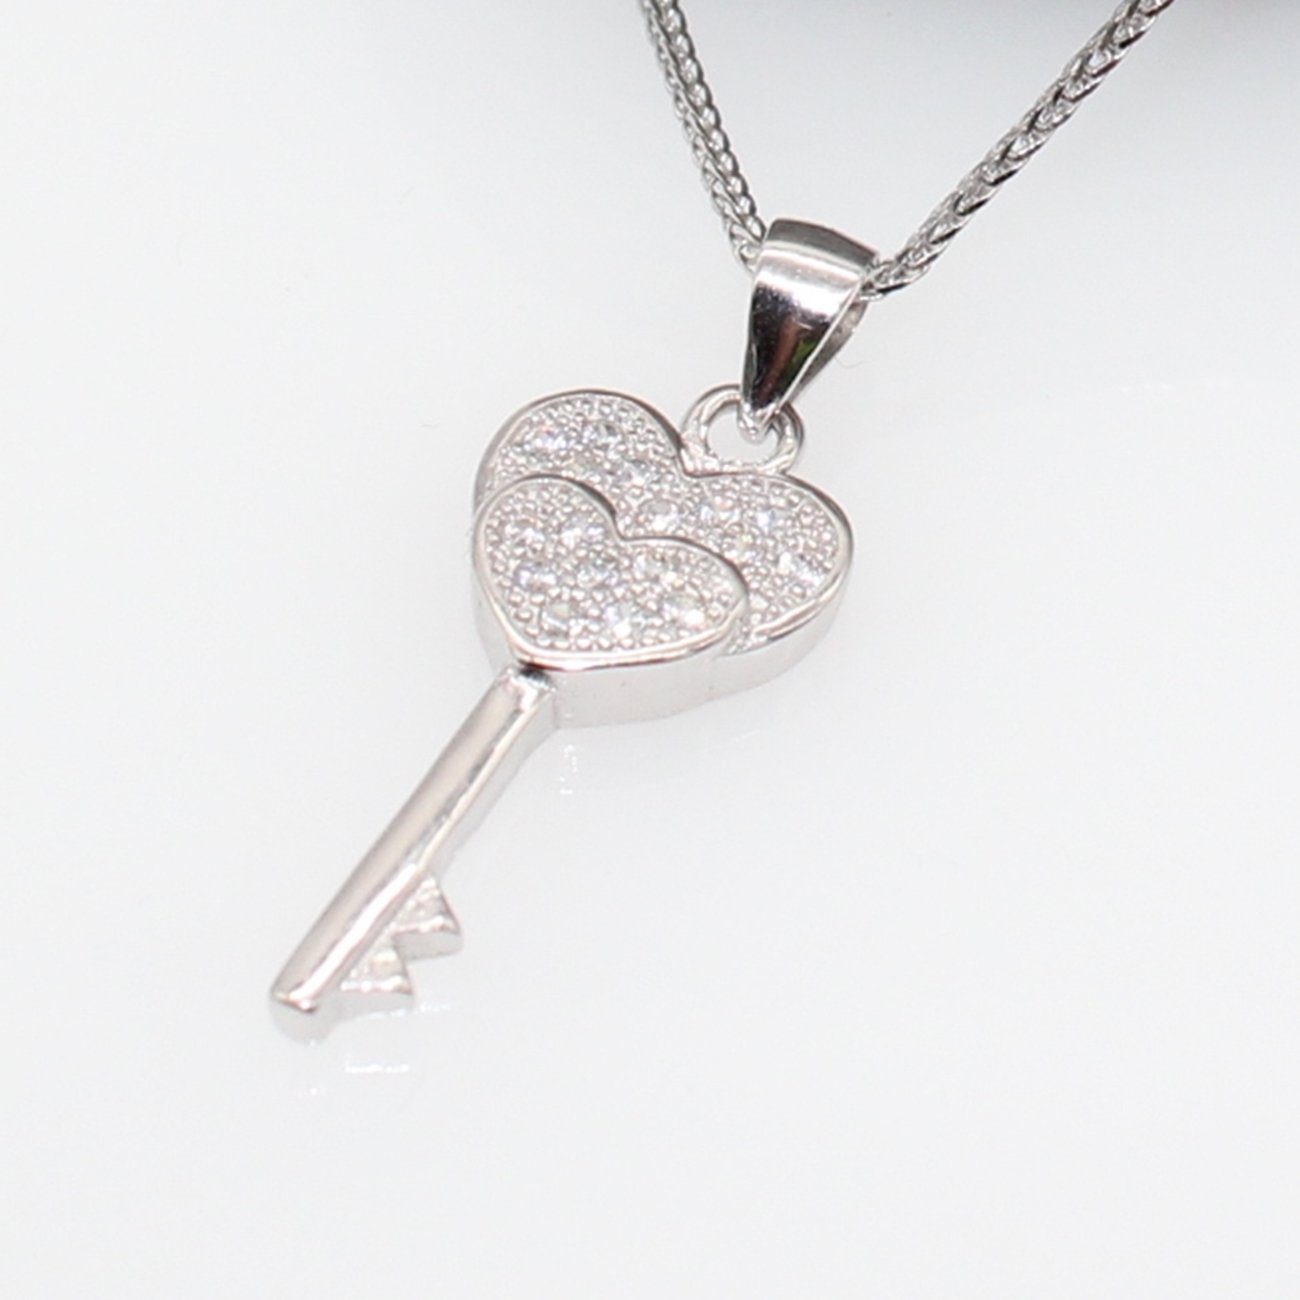 ELLAWIL Herzkette Silberkette Kette mit Schlüssel Anhänger Herz Zirkonia Halskette (Kettenlänge 40 cm, Sterling Silber 925), inklusive Geschenkschachtel